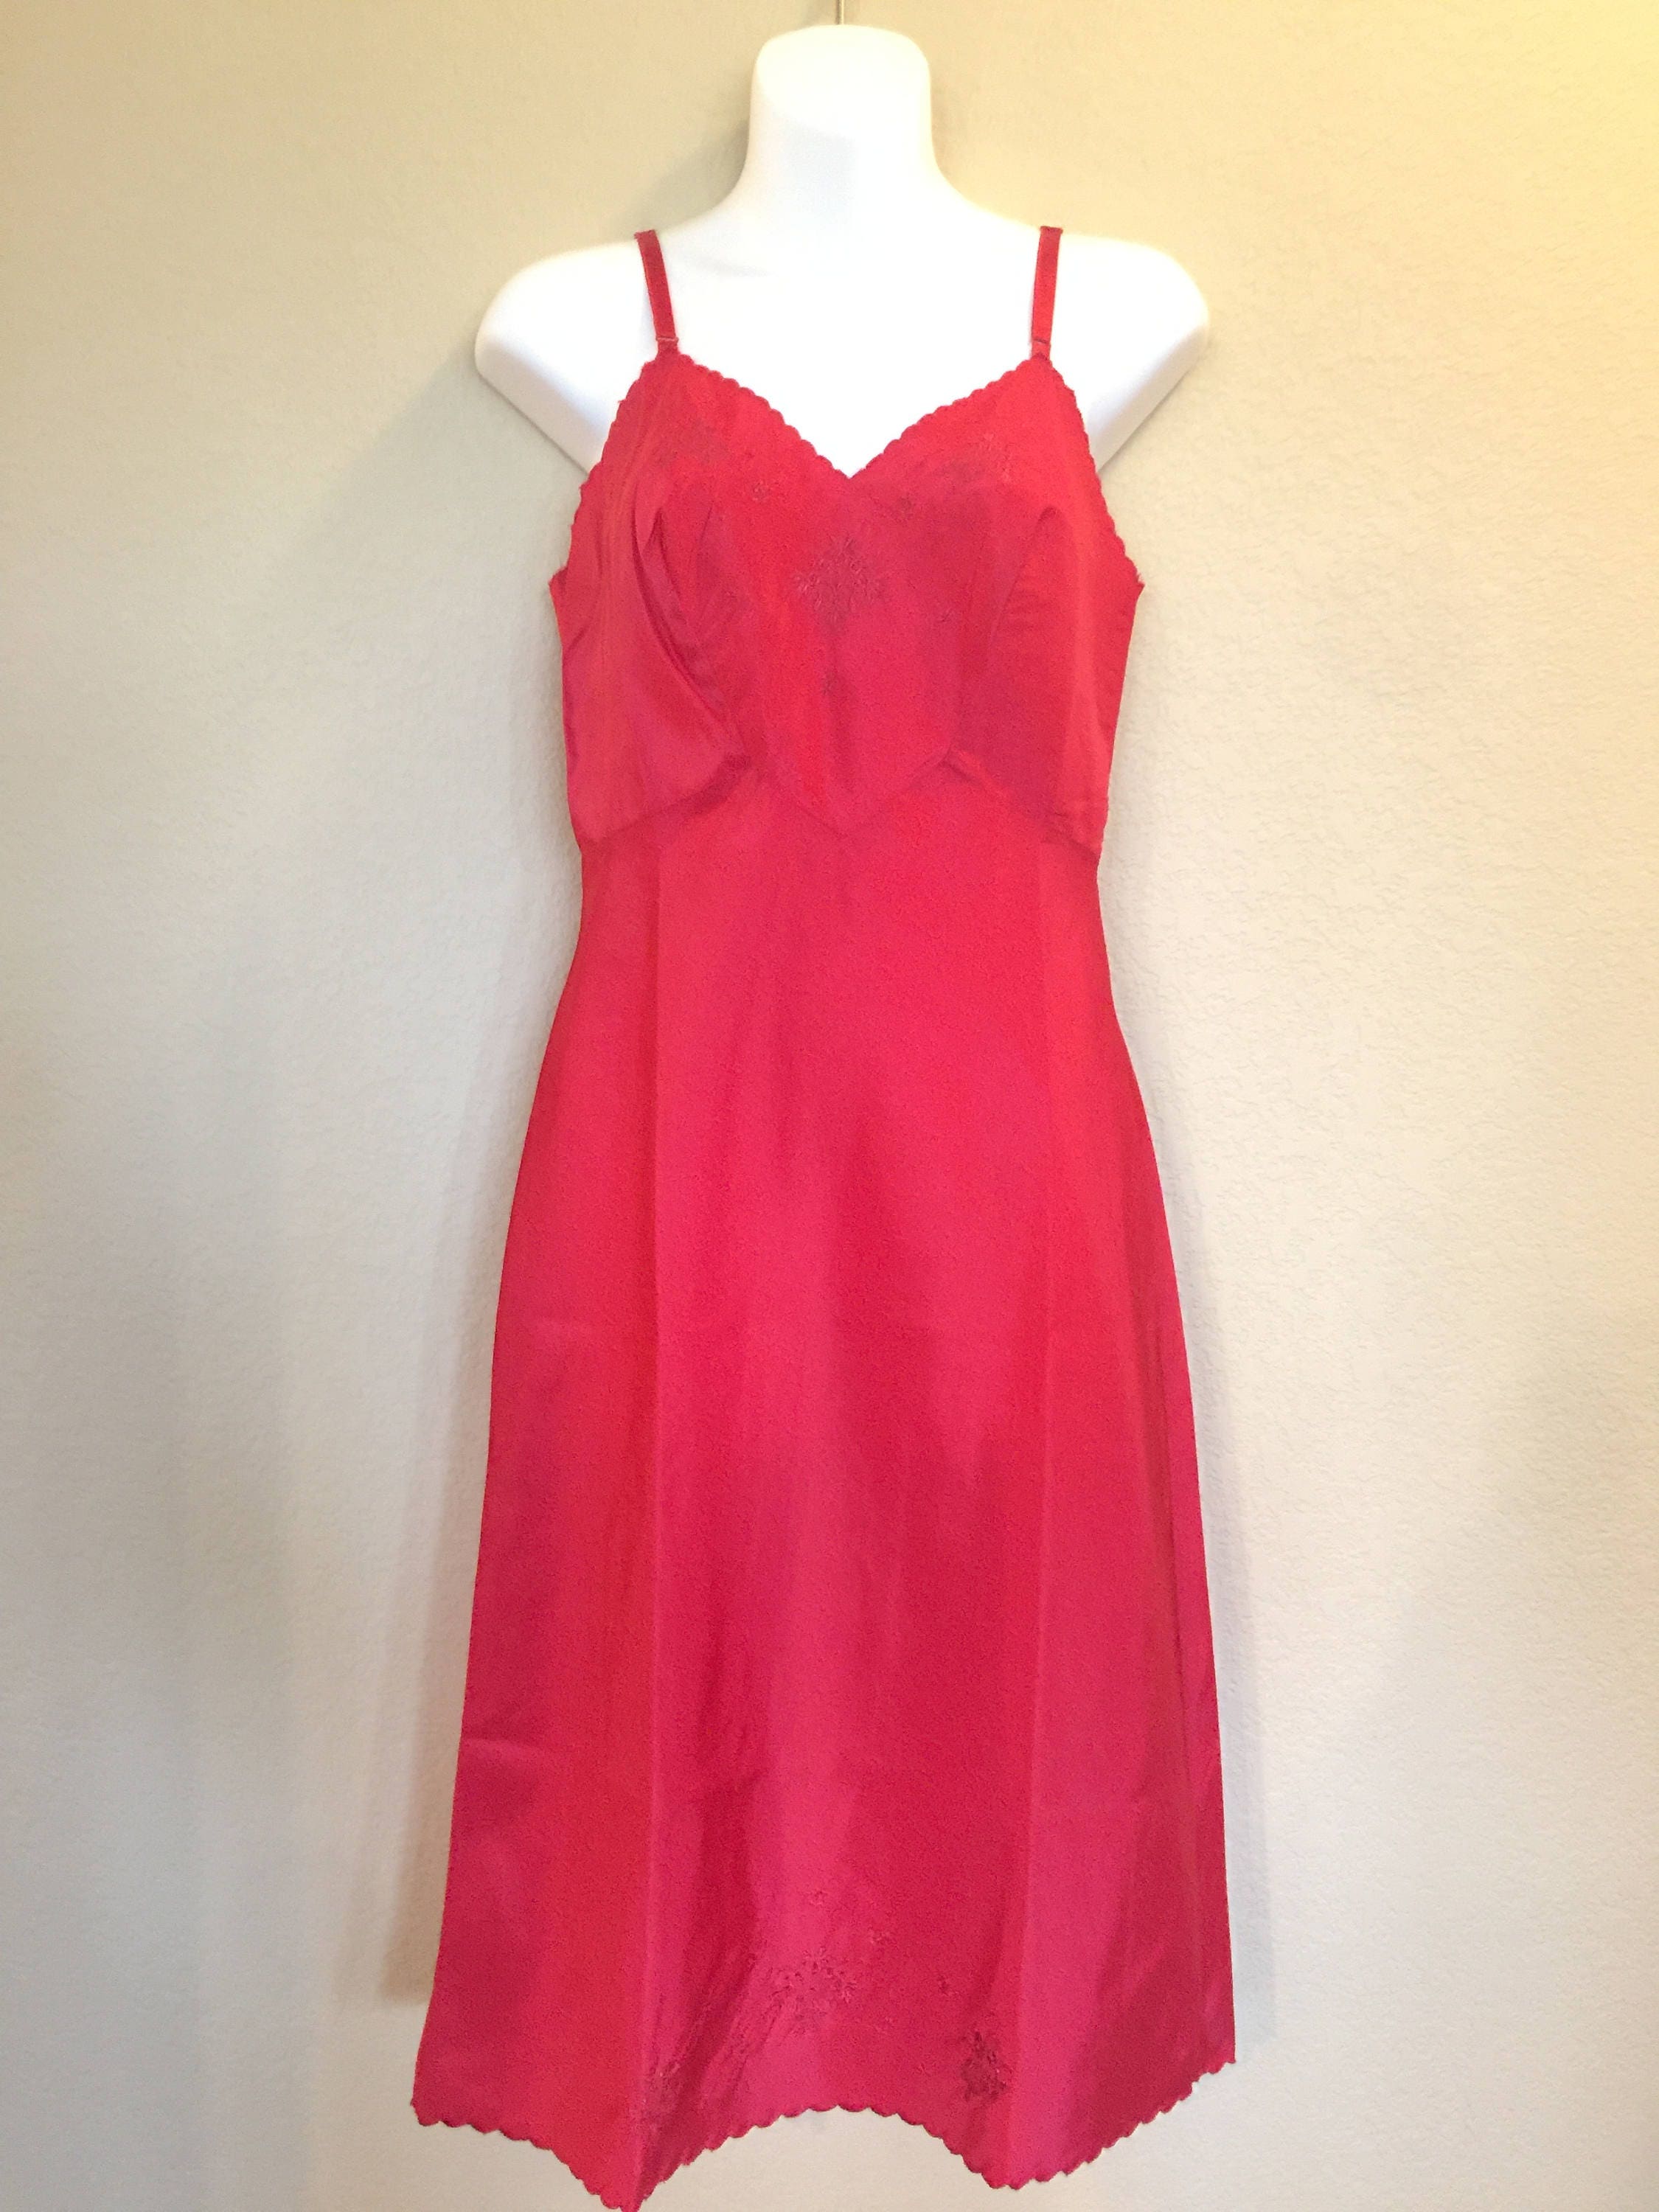 Ladies Full Slip Red Taffeta Lingerie Slip Dress A Line | Etsy